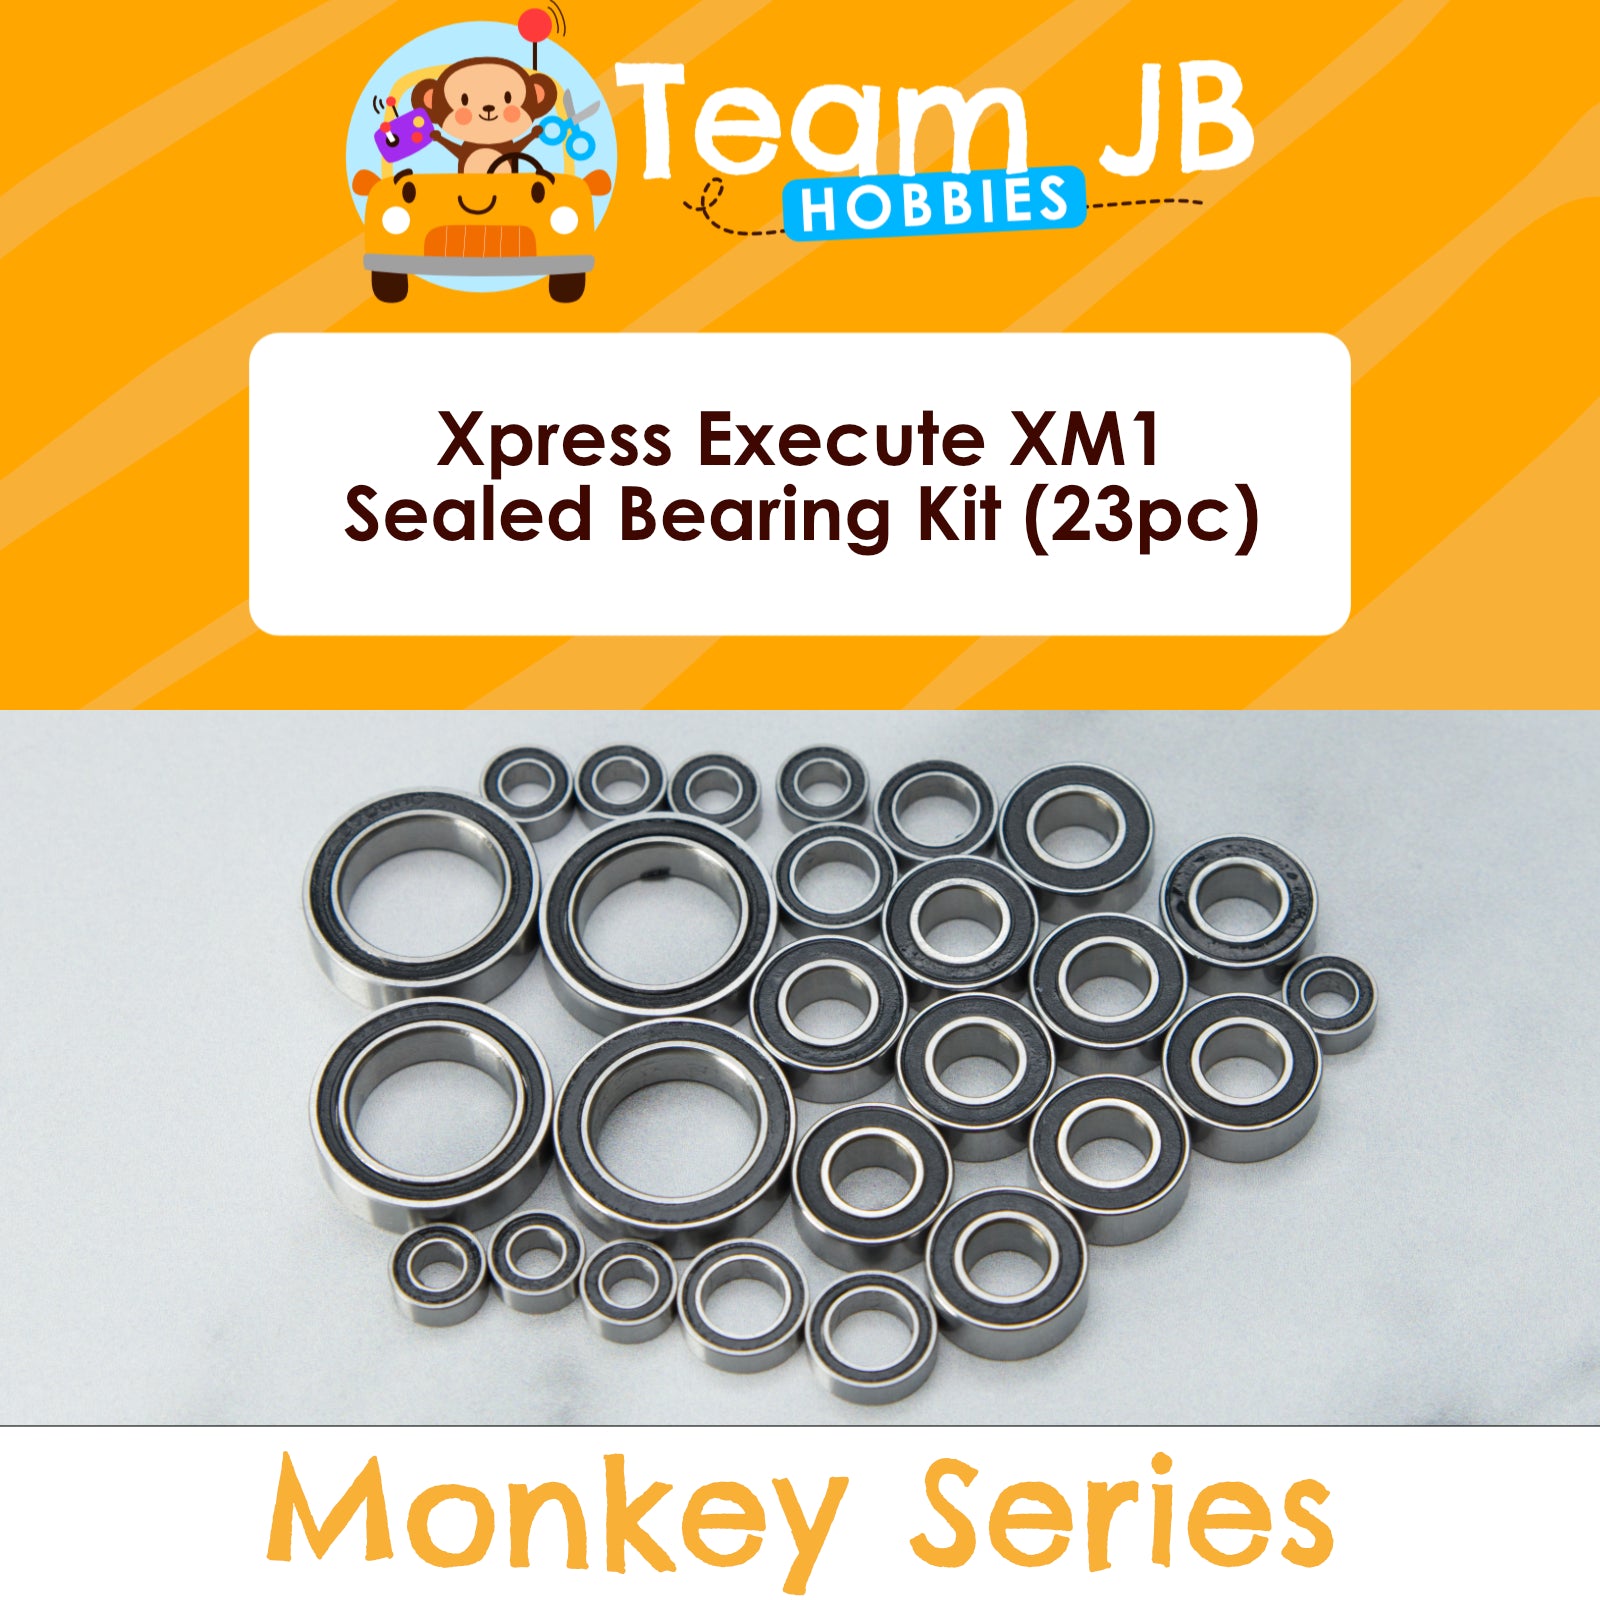 Xpress Execute XM1 - Sealed Bearing Kit